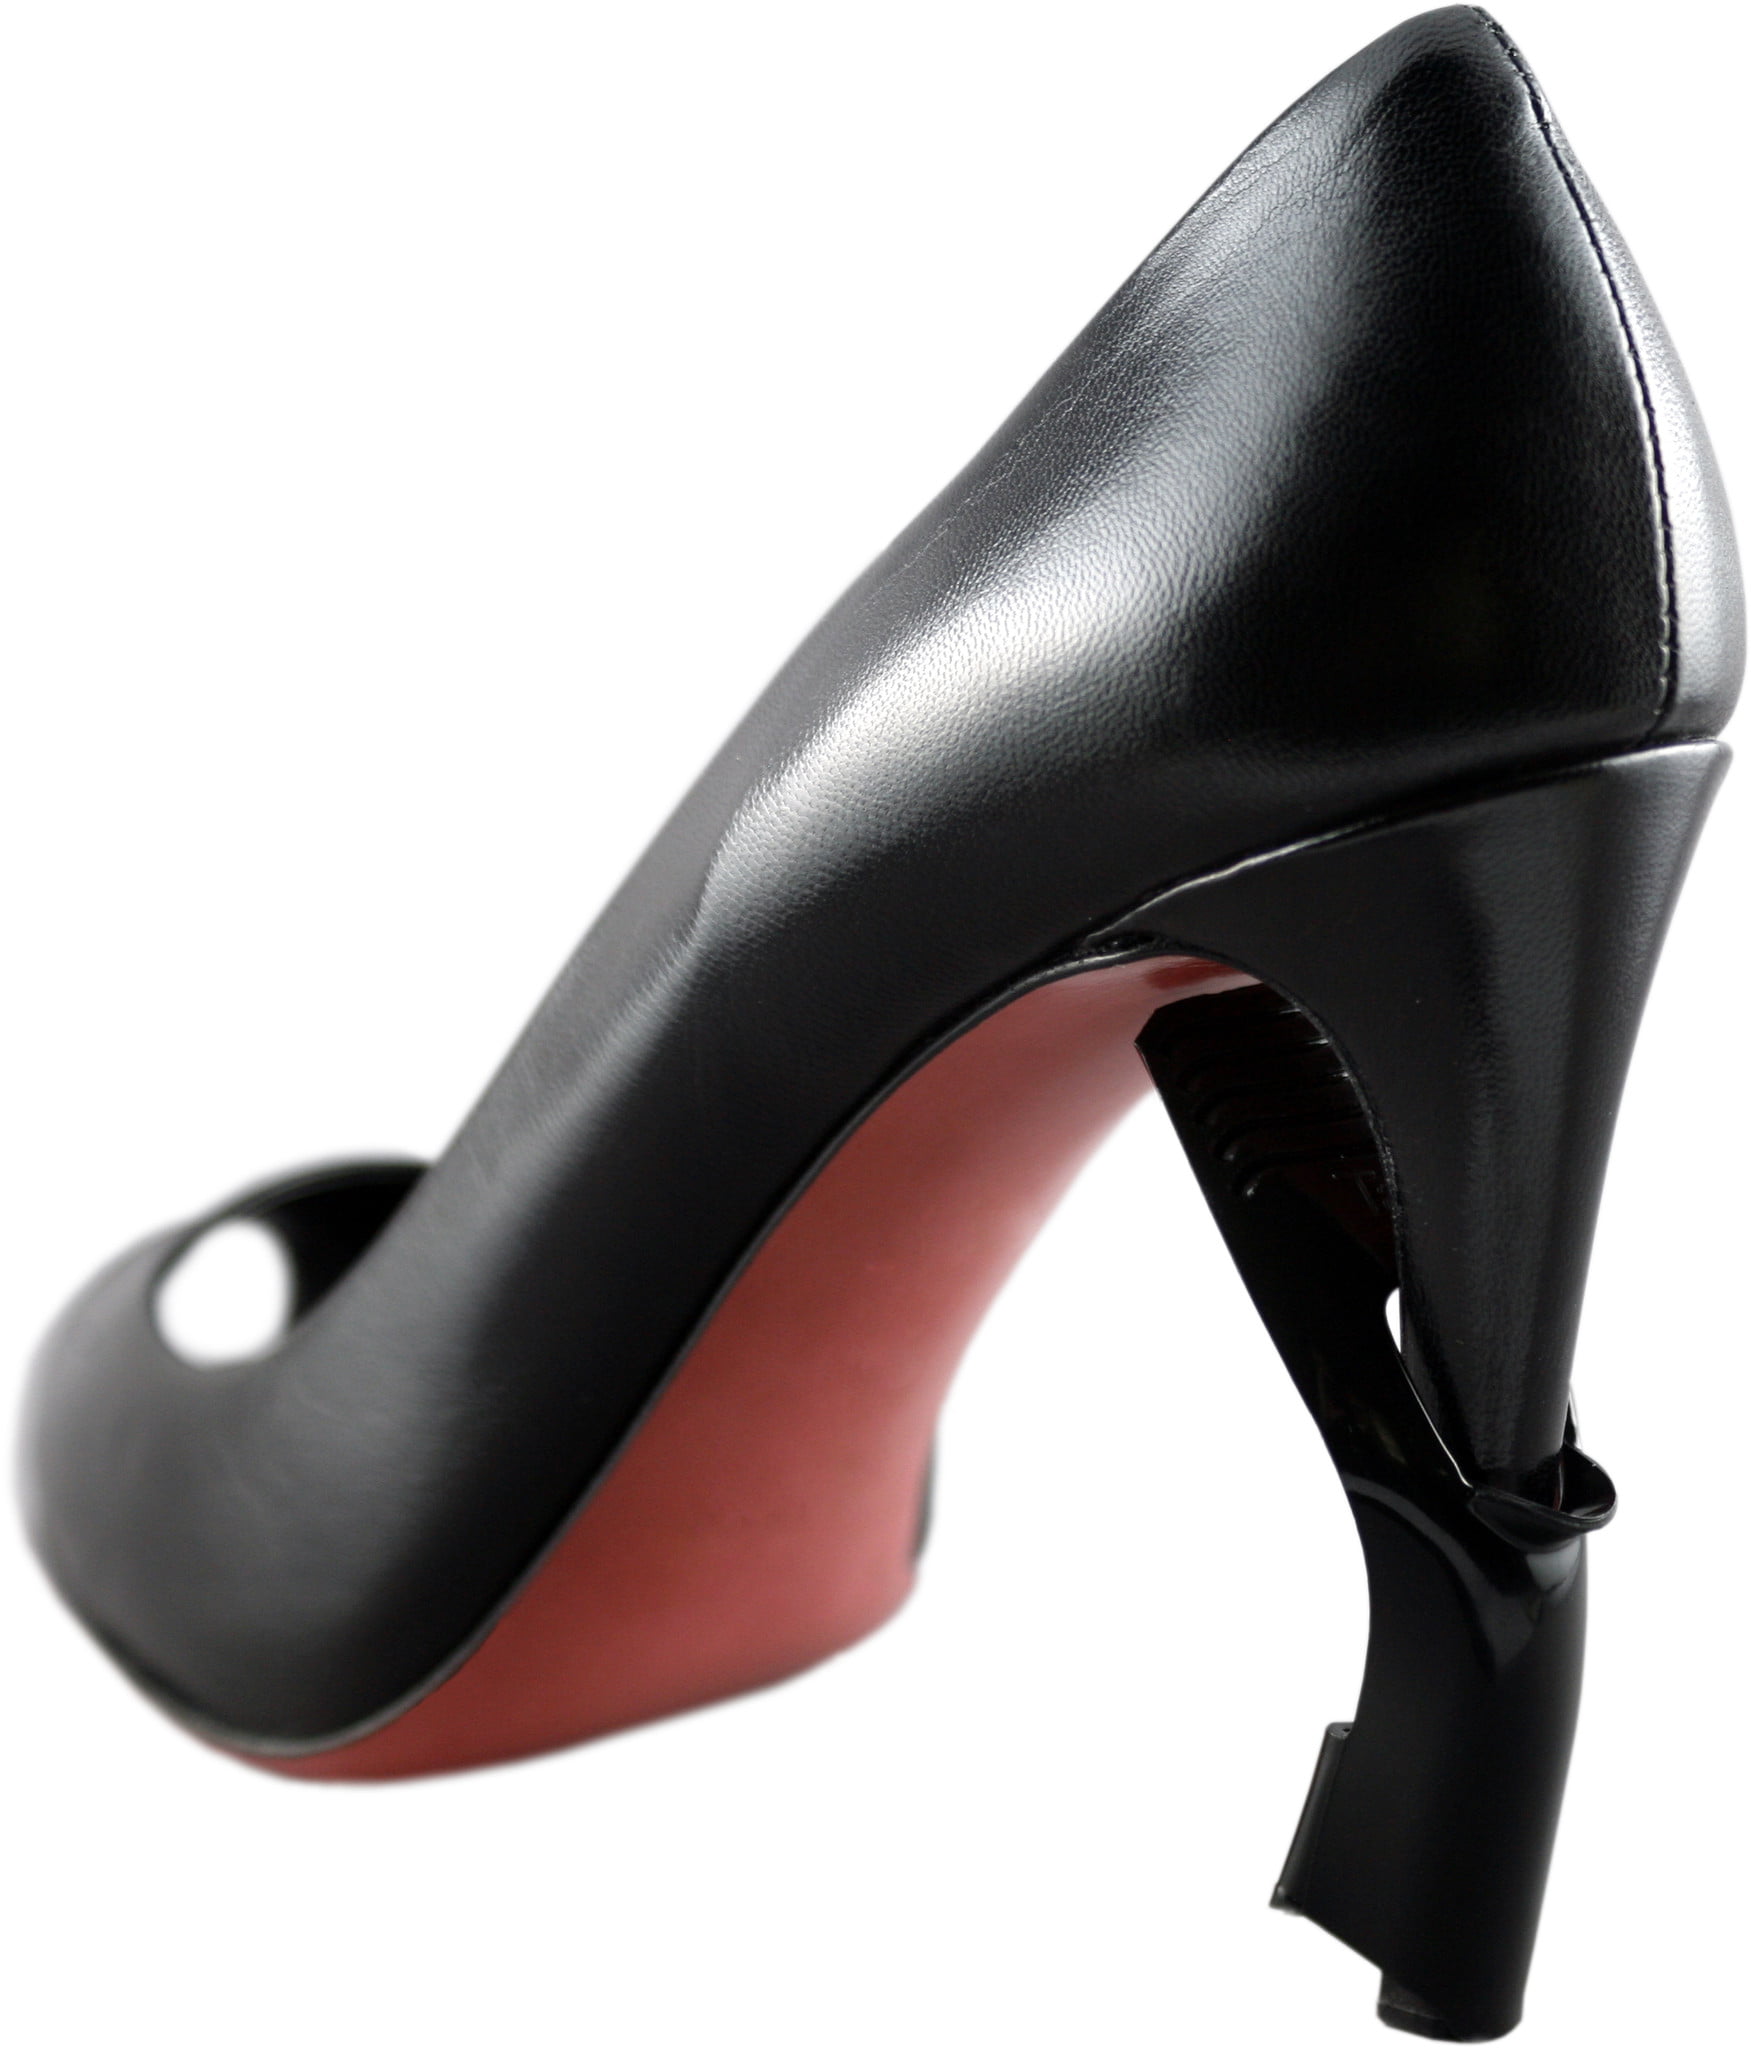 Buy > heel covers for high heels > in stock